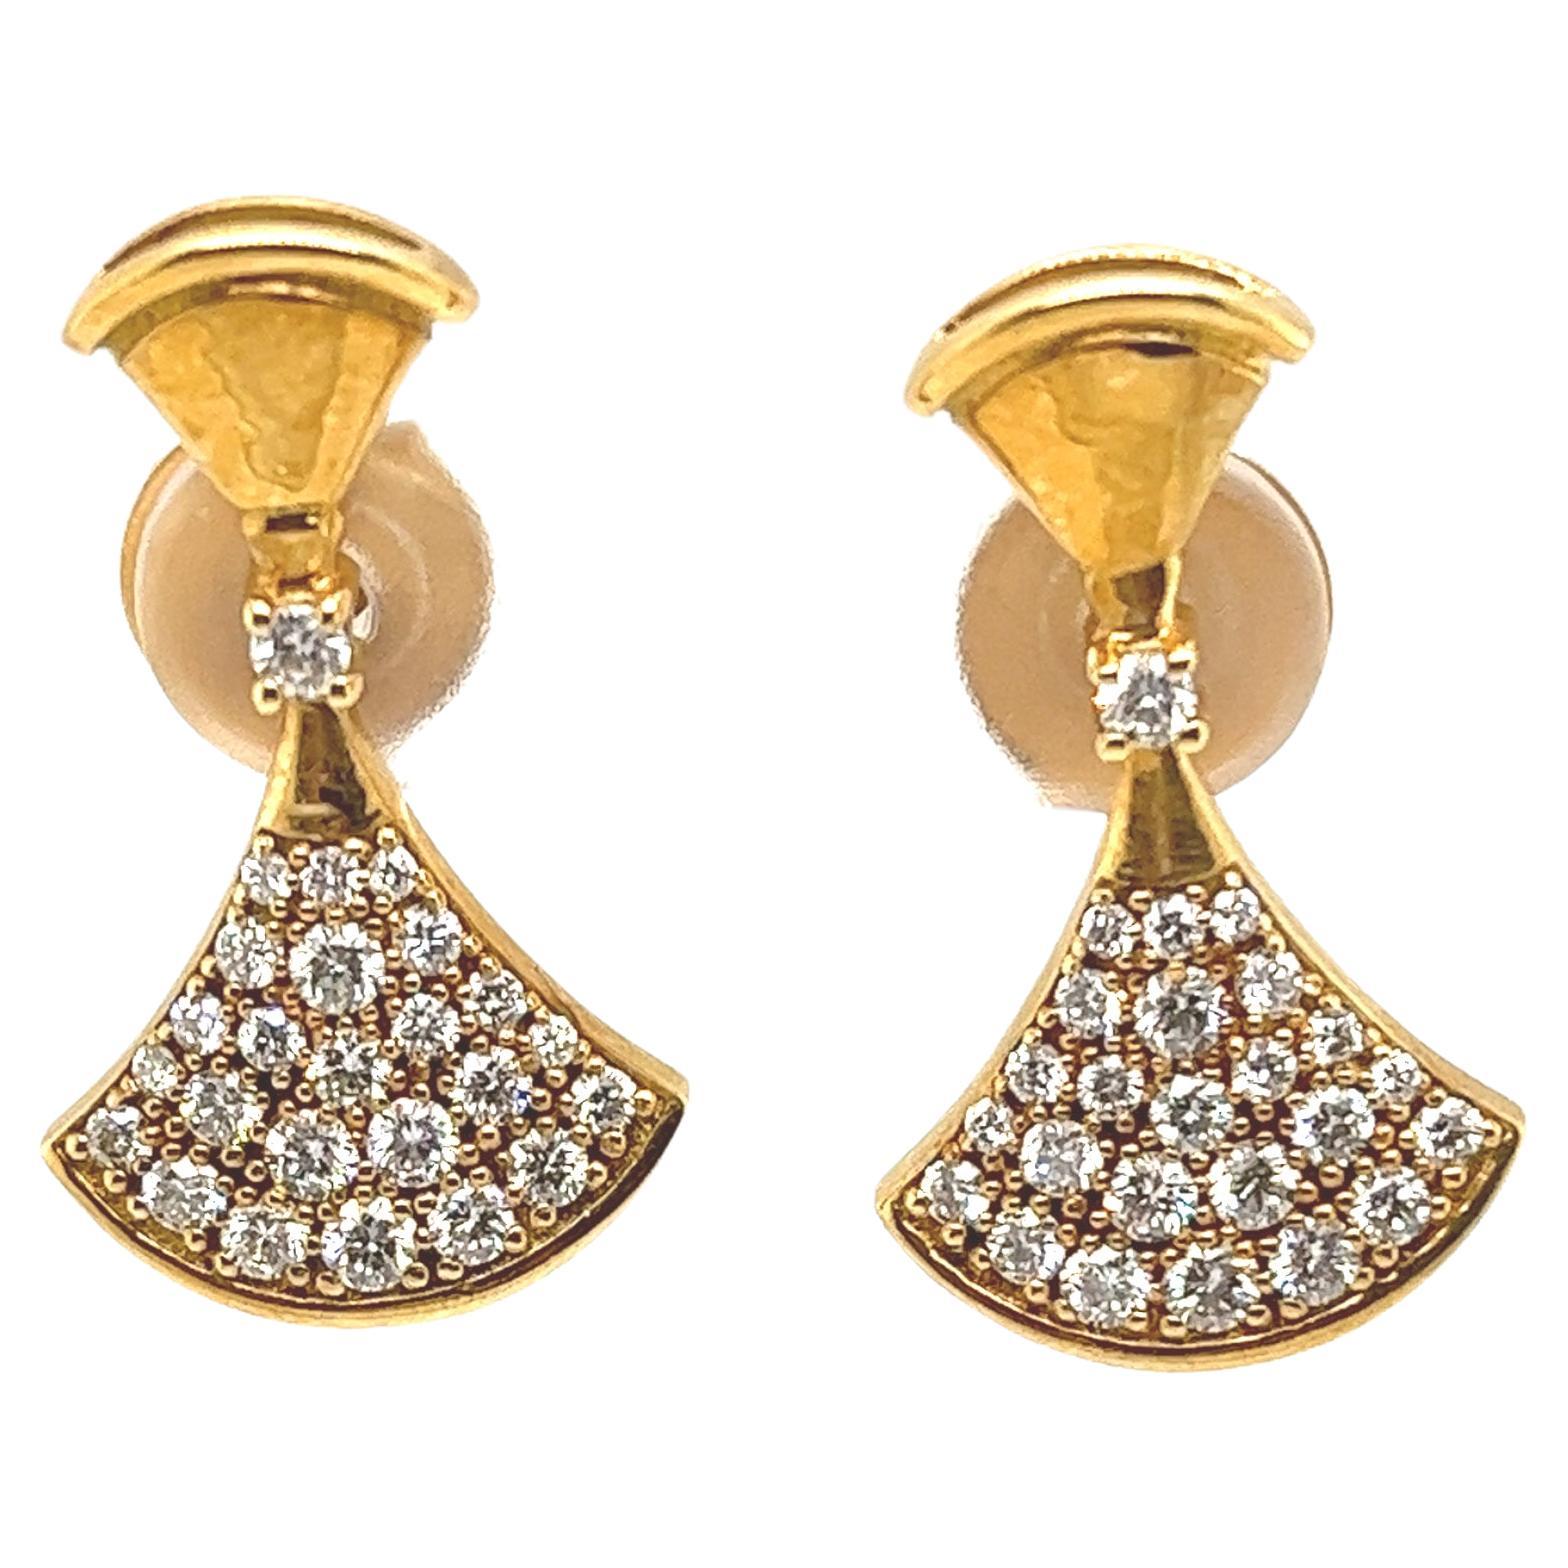 Fine Quality Fan Shape Diamond Earrings in 18ct Yellow Gold For Sale